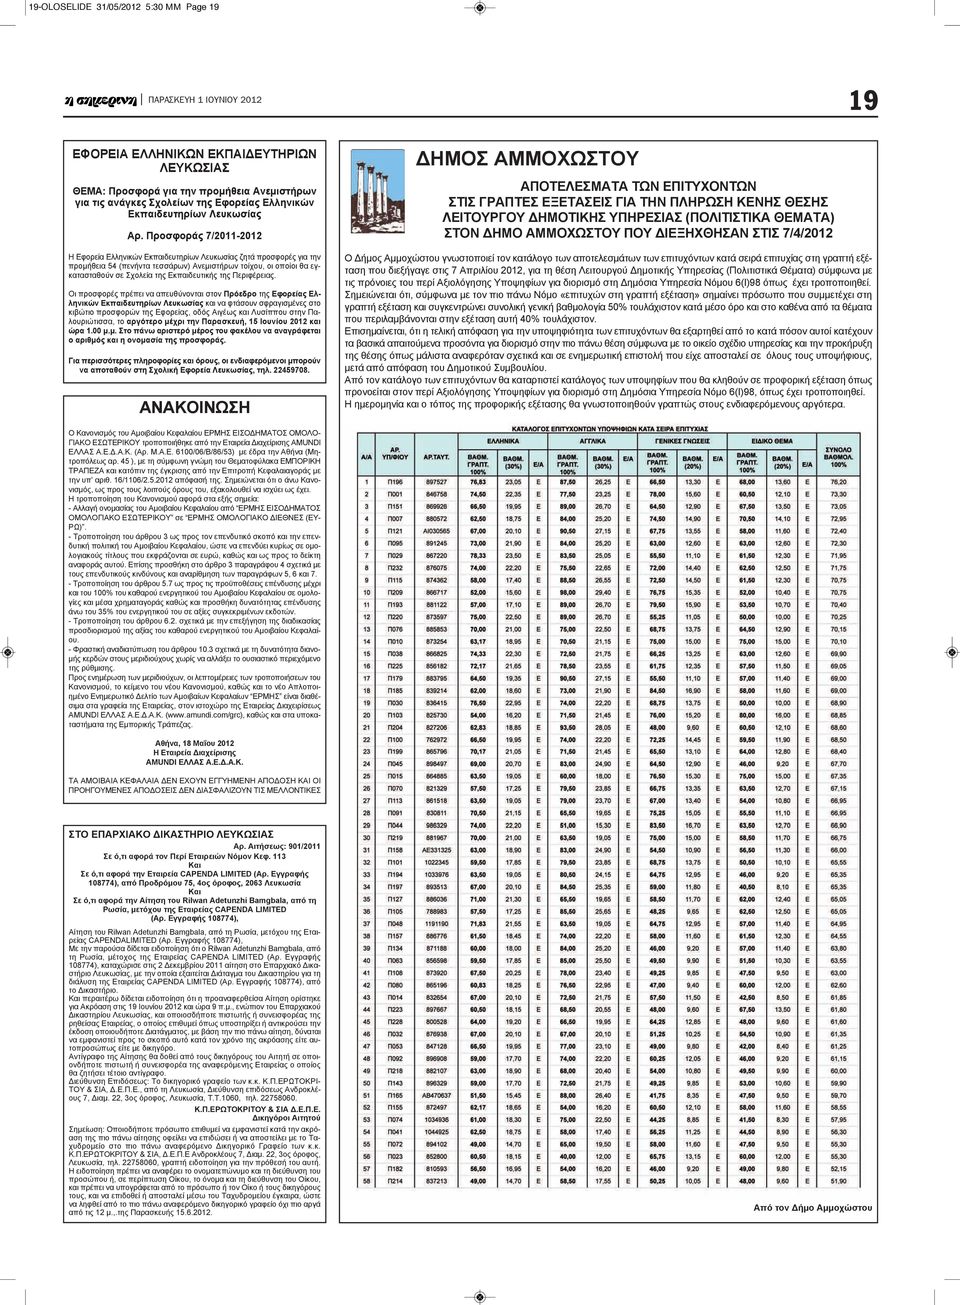 Προσφοράς 7/2011-2012 Η Εφορεία Ελληνικών Εκπαιδευτηρίων Λευκωσίας ζητά προσφορές για την προμήθεια 54 (πενήντα τεσσάρων) Ανεμιστήρων τοίχου, οι οποίοι θα εγκατασταθούν σε Σχολεία της Εκπαιδευτικής